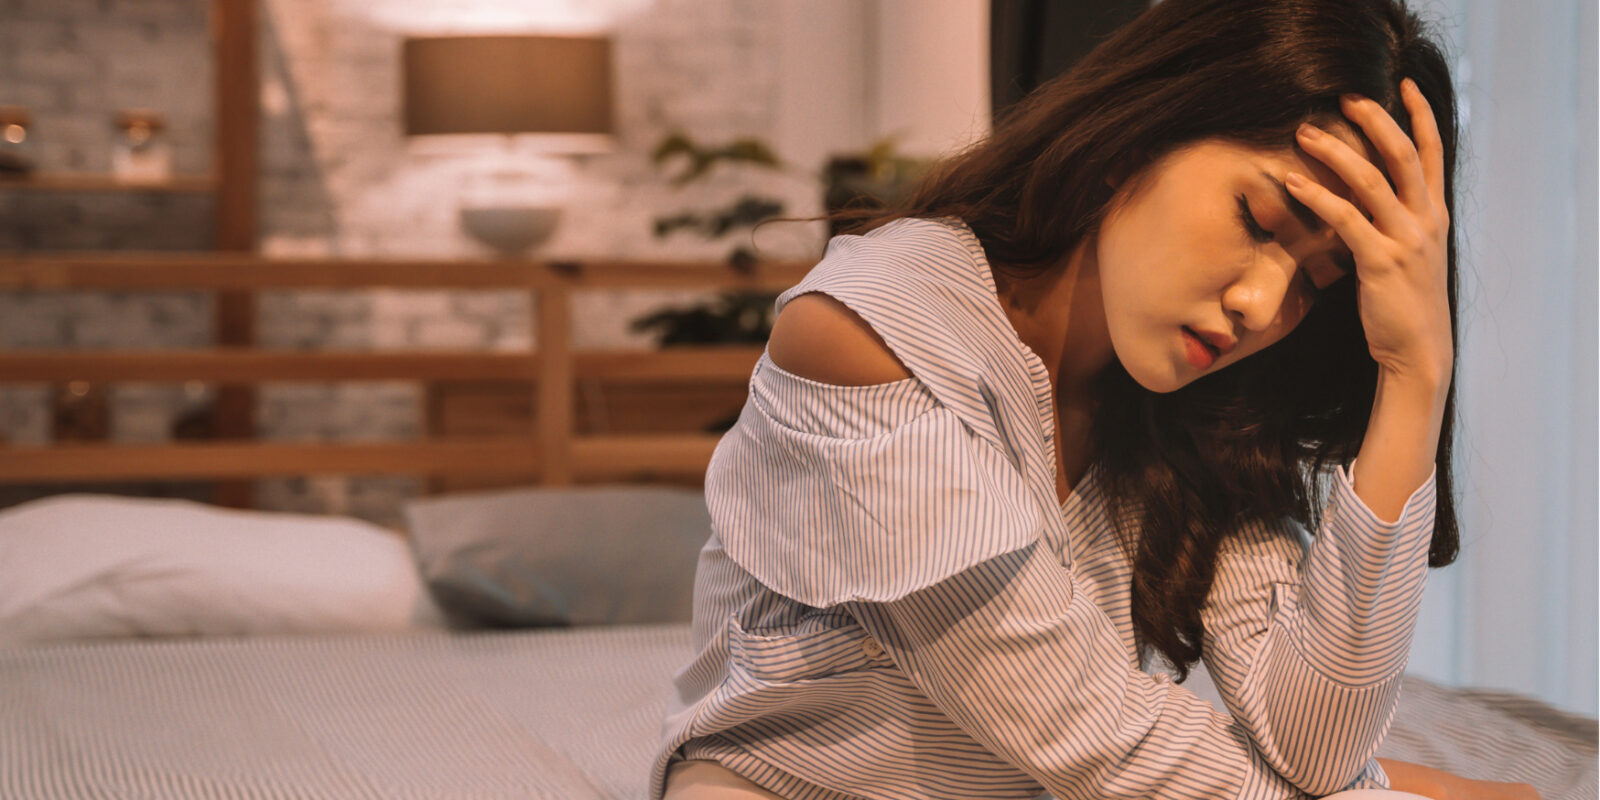 Kopfschmerzen nach Orgasmus: Ursachen, Symptome und Behandlung